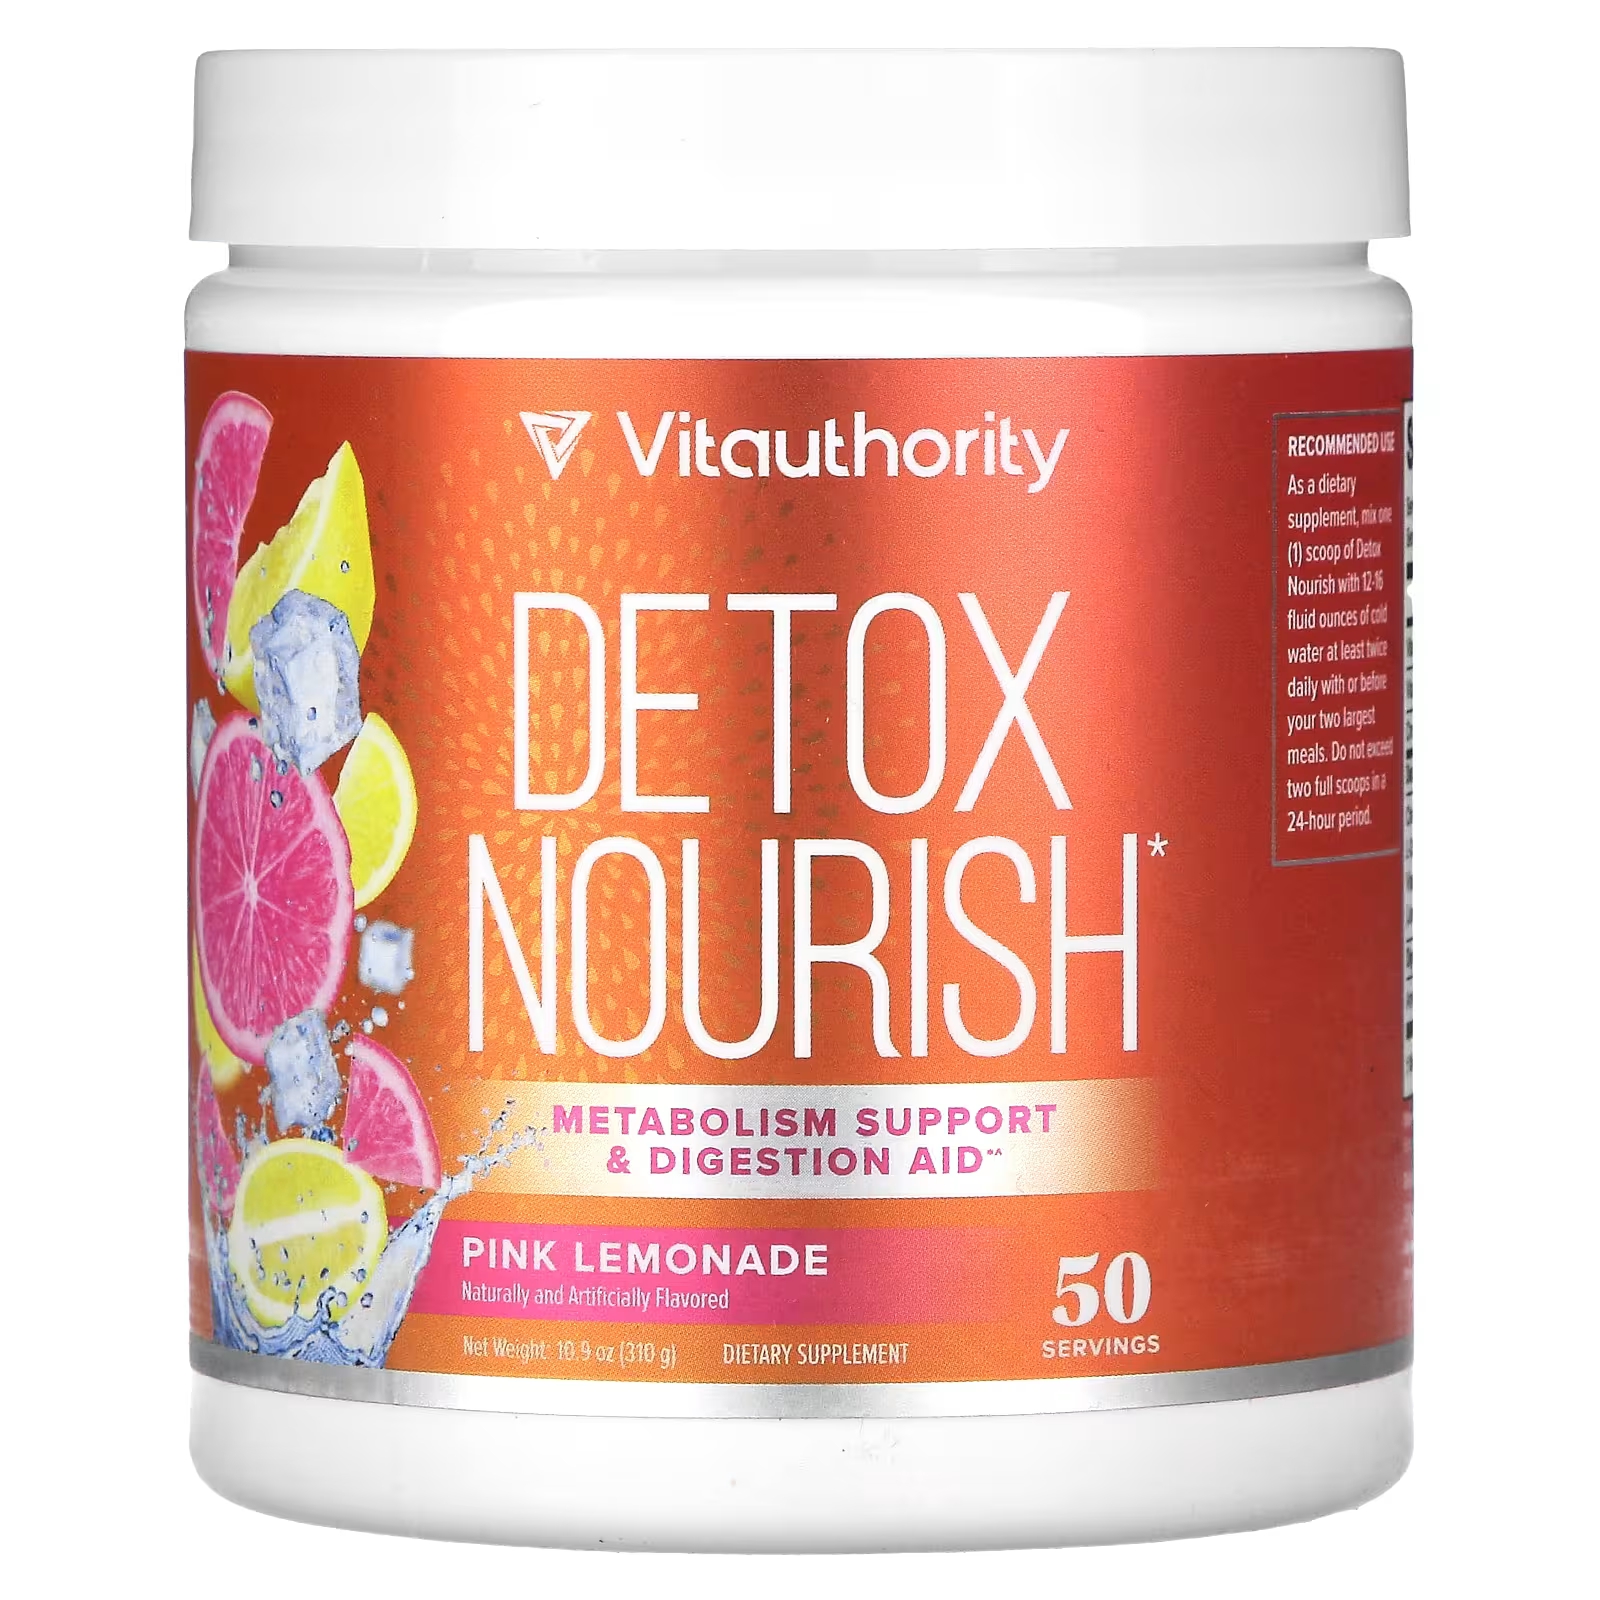 Пищевая добавка Vitauthority Detox Nourish розовый лимонад, 310 г vitauthority detox nourish natural watermelon 310 г